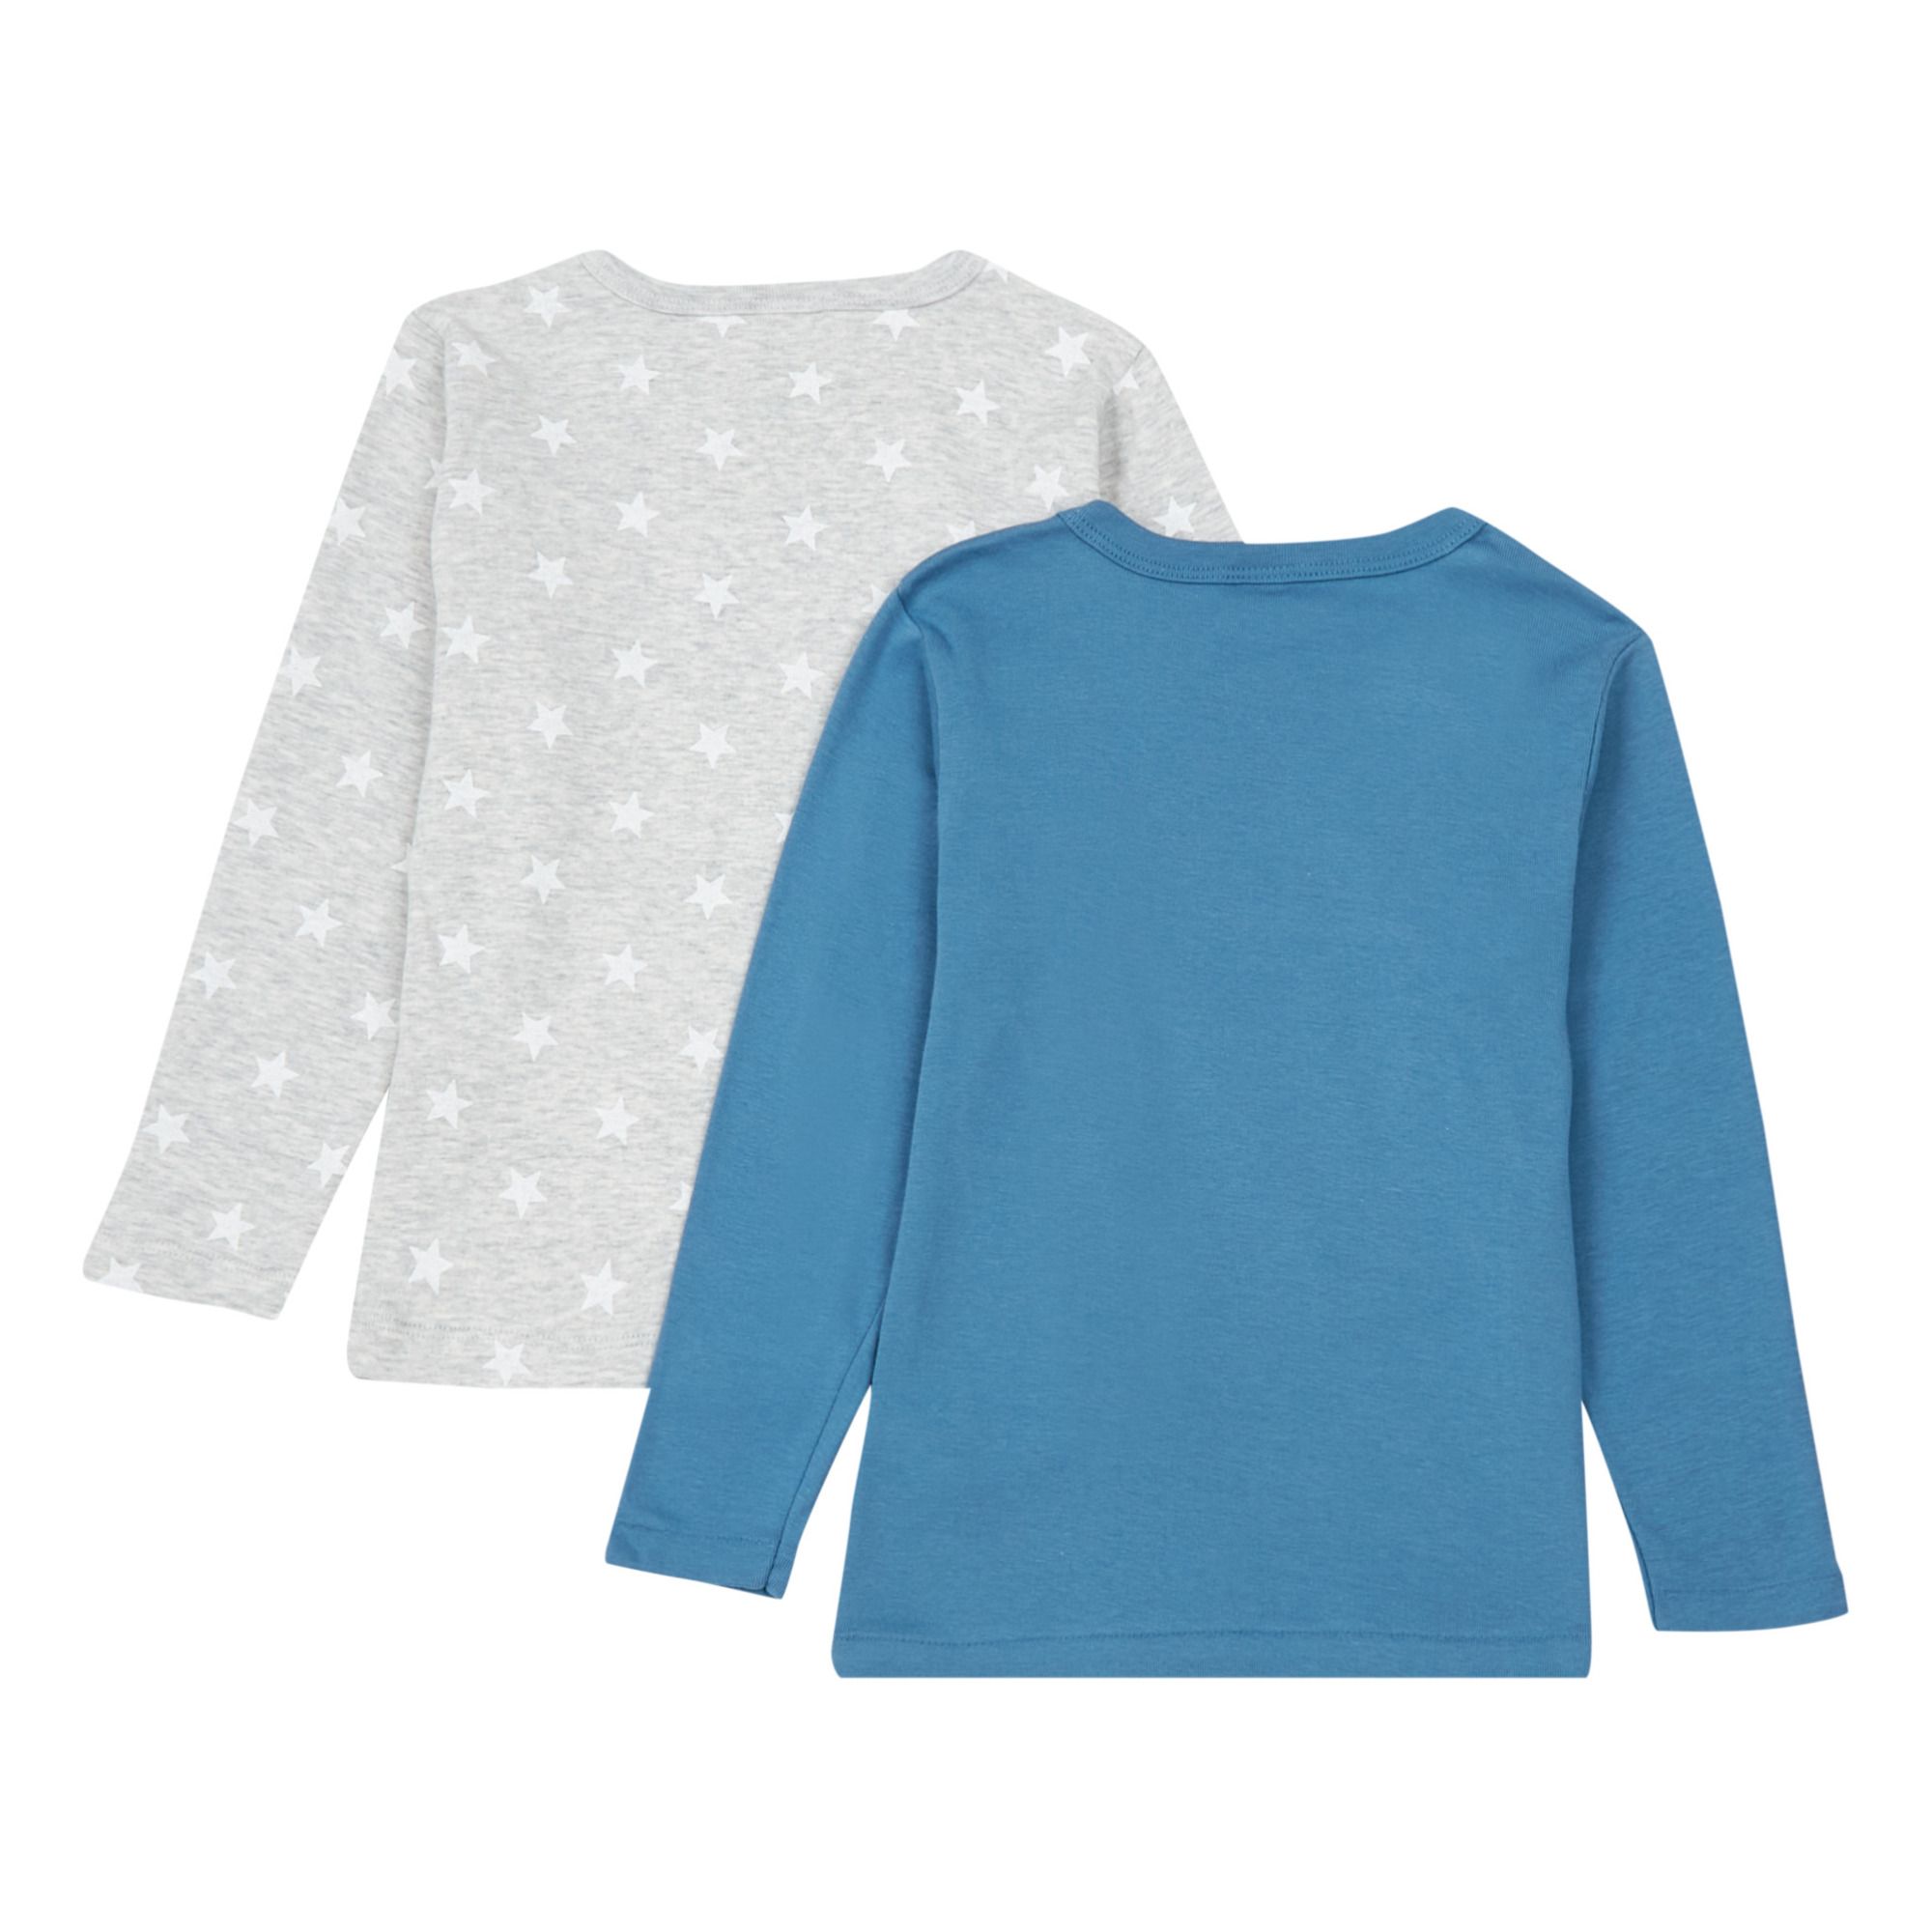 Lote de 2 camisetas de algodón orgánico Chauds Azul- Imagen del producto n°1